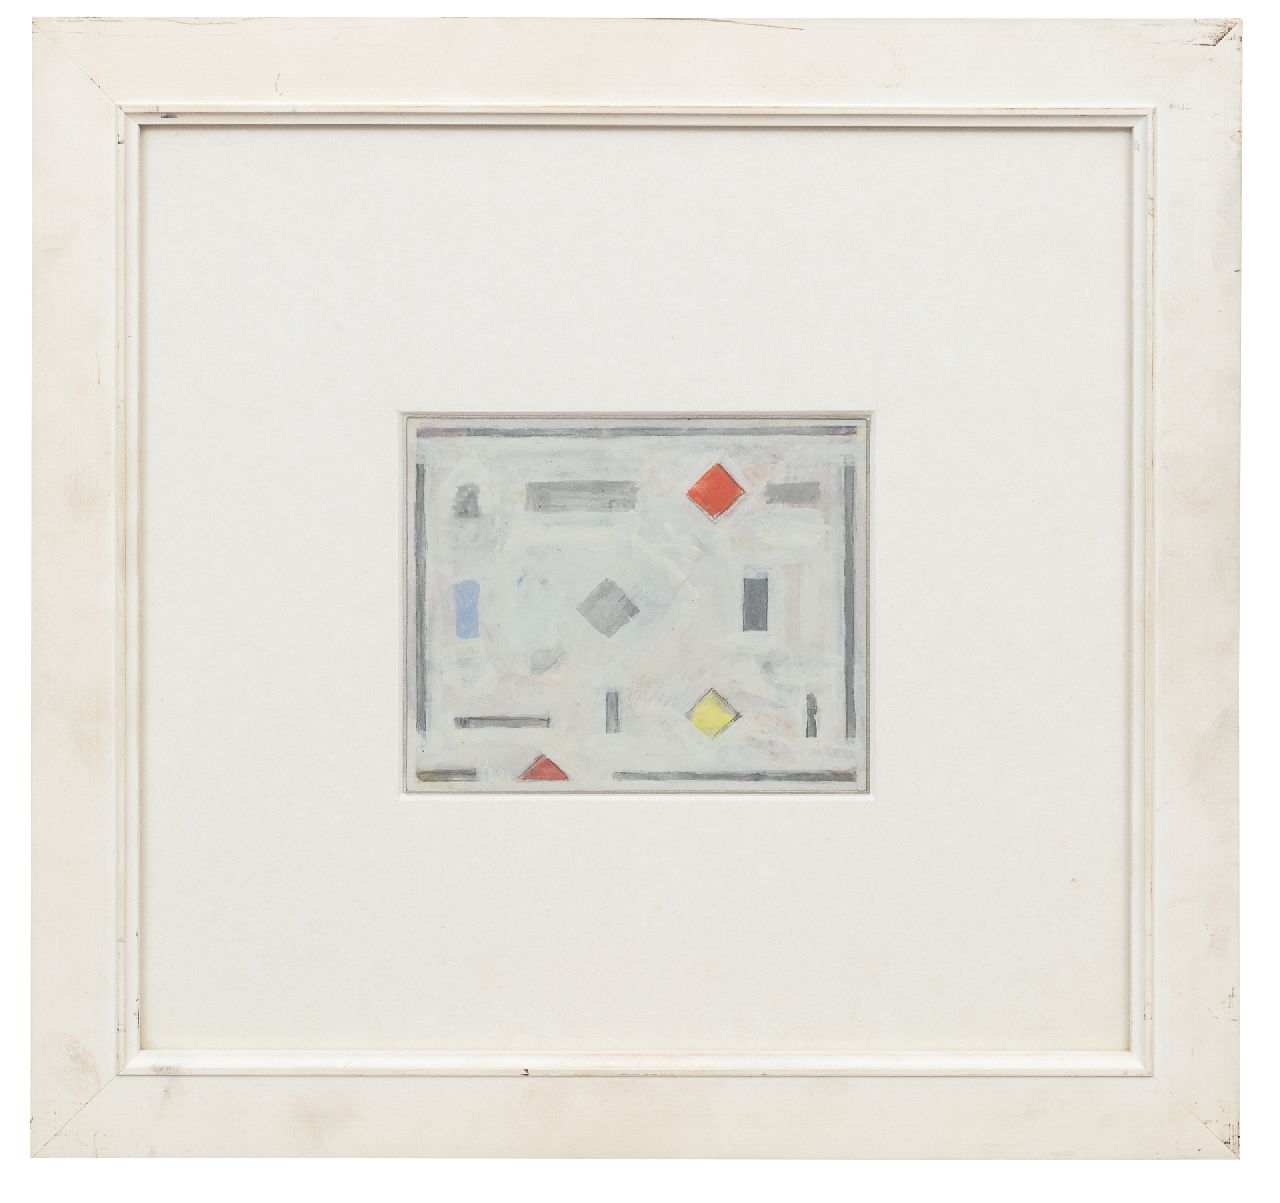 Leck B.A. van der | 'Bart' Anthony van der Leck | Aquarellen en tekeningen te koop aangeboden | Compositie, gouache op papier 13,5 x 16,5 cm, te dateren vroege jaren 30